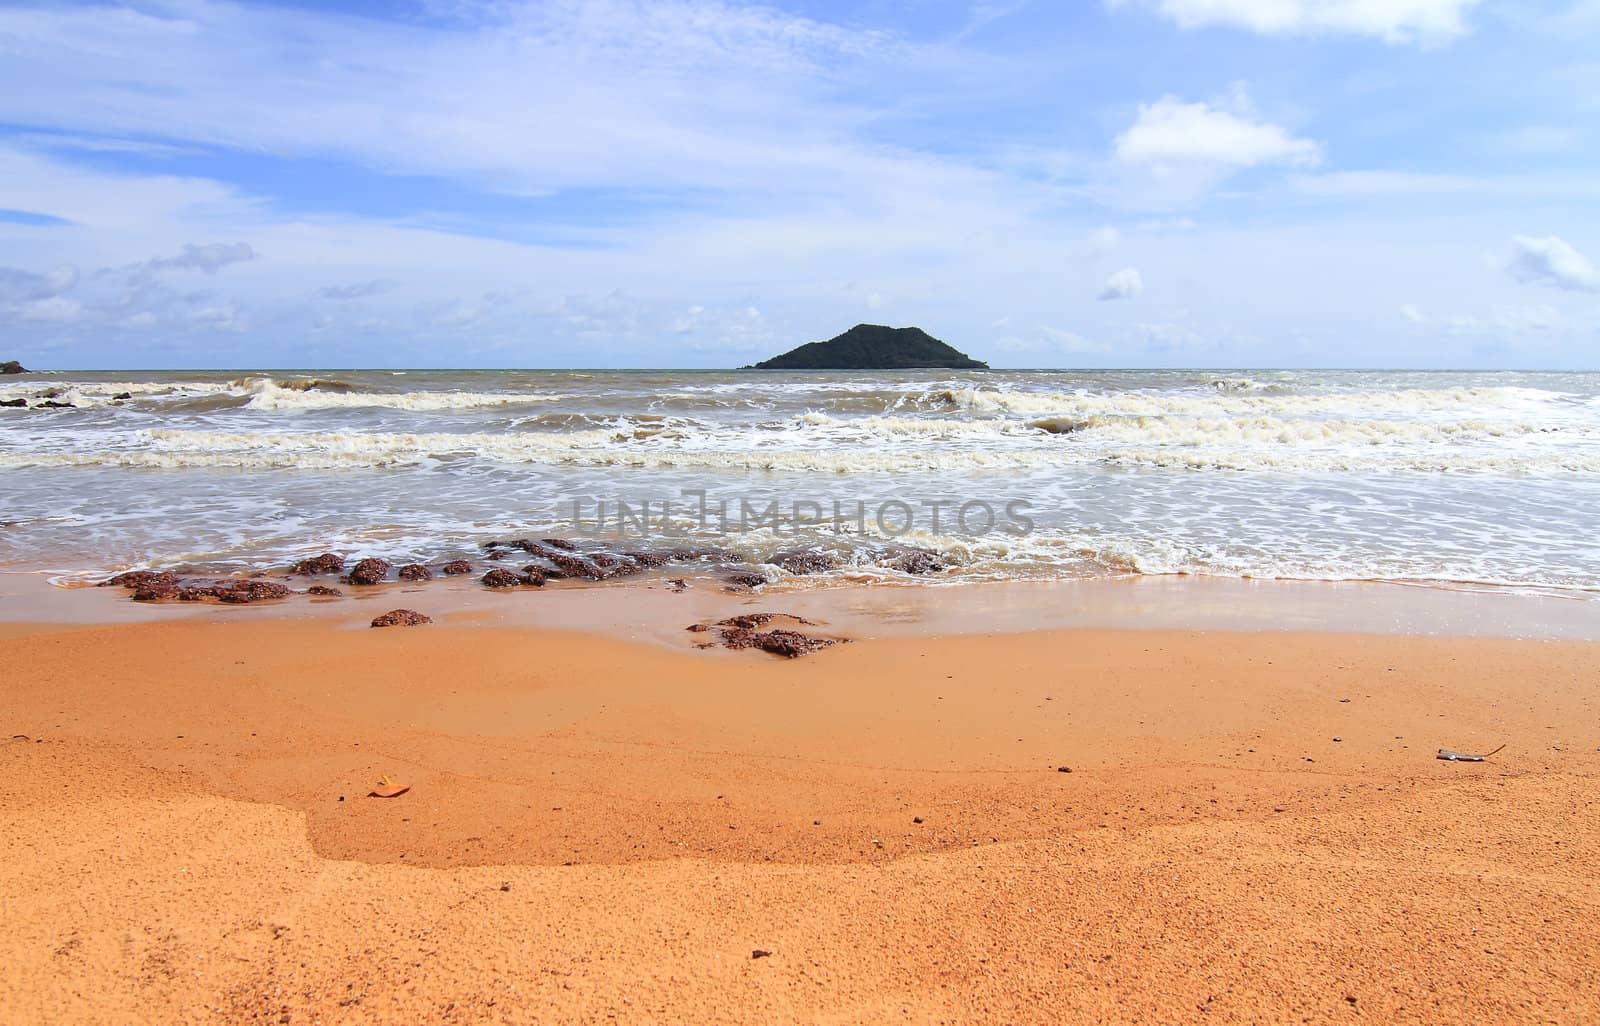 Beach of Thailand 
 by rufous